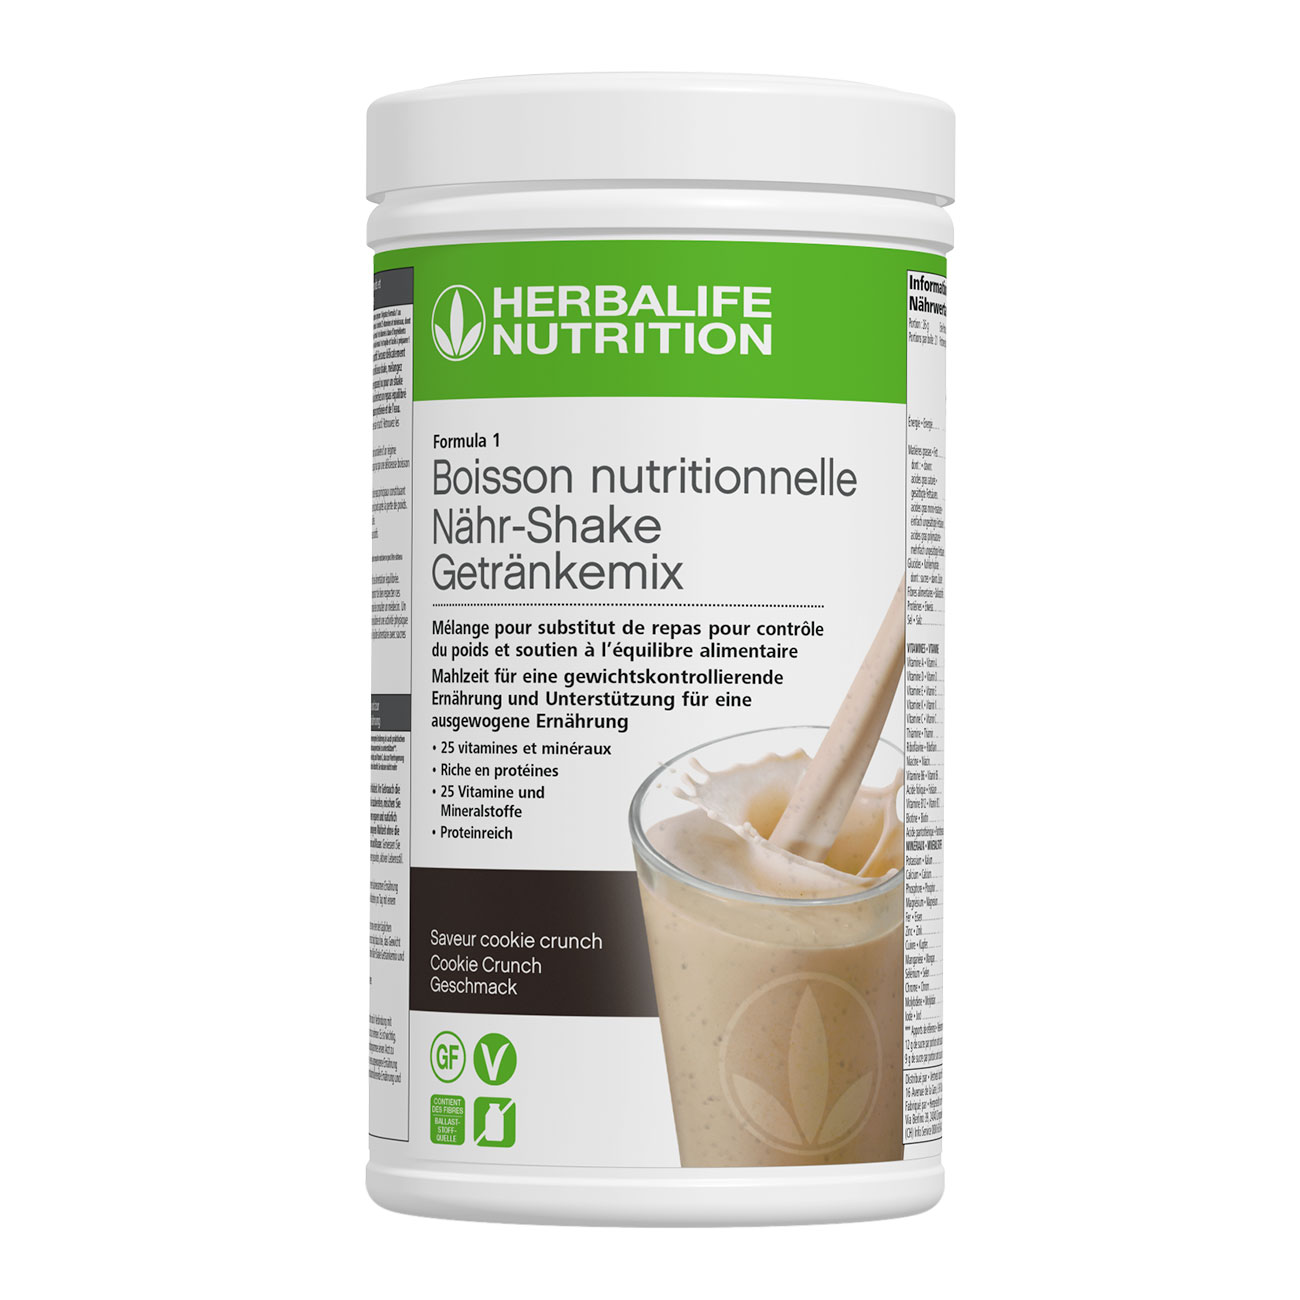 Formula 1 Cookie crunch – un shake proteine complet. Ingredients vegan. Sans gluten. Pour le controle de poids.